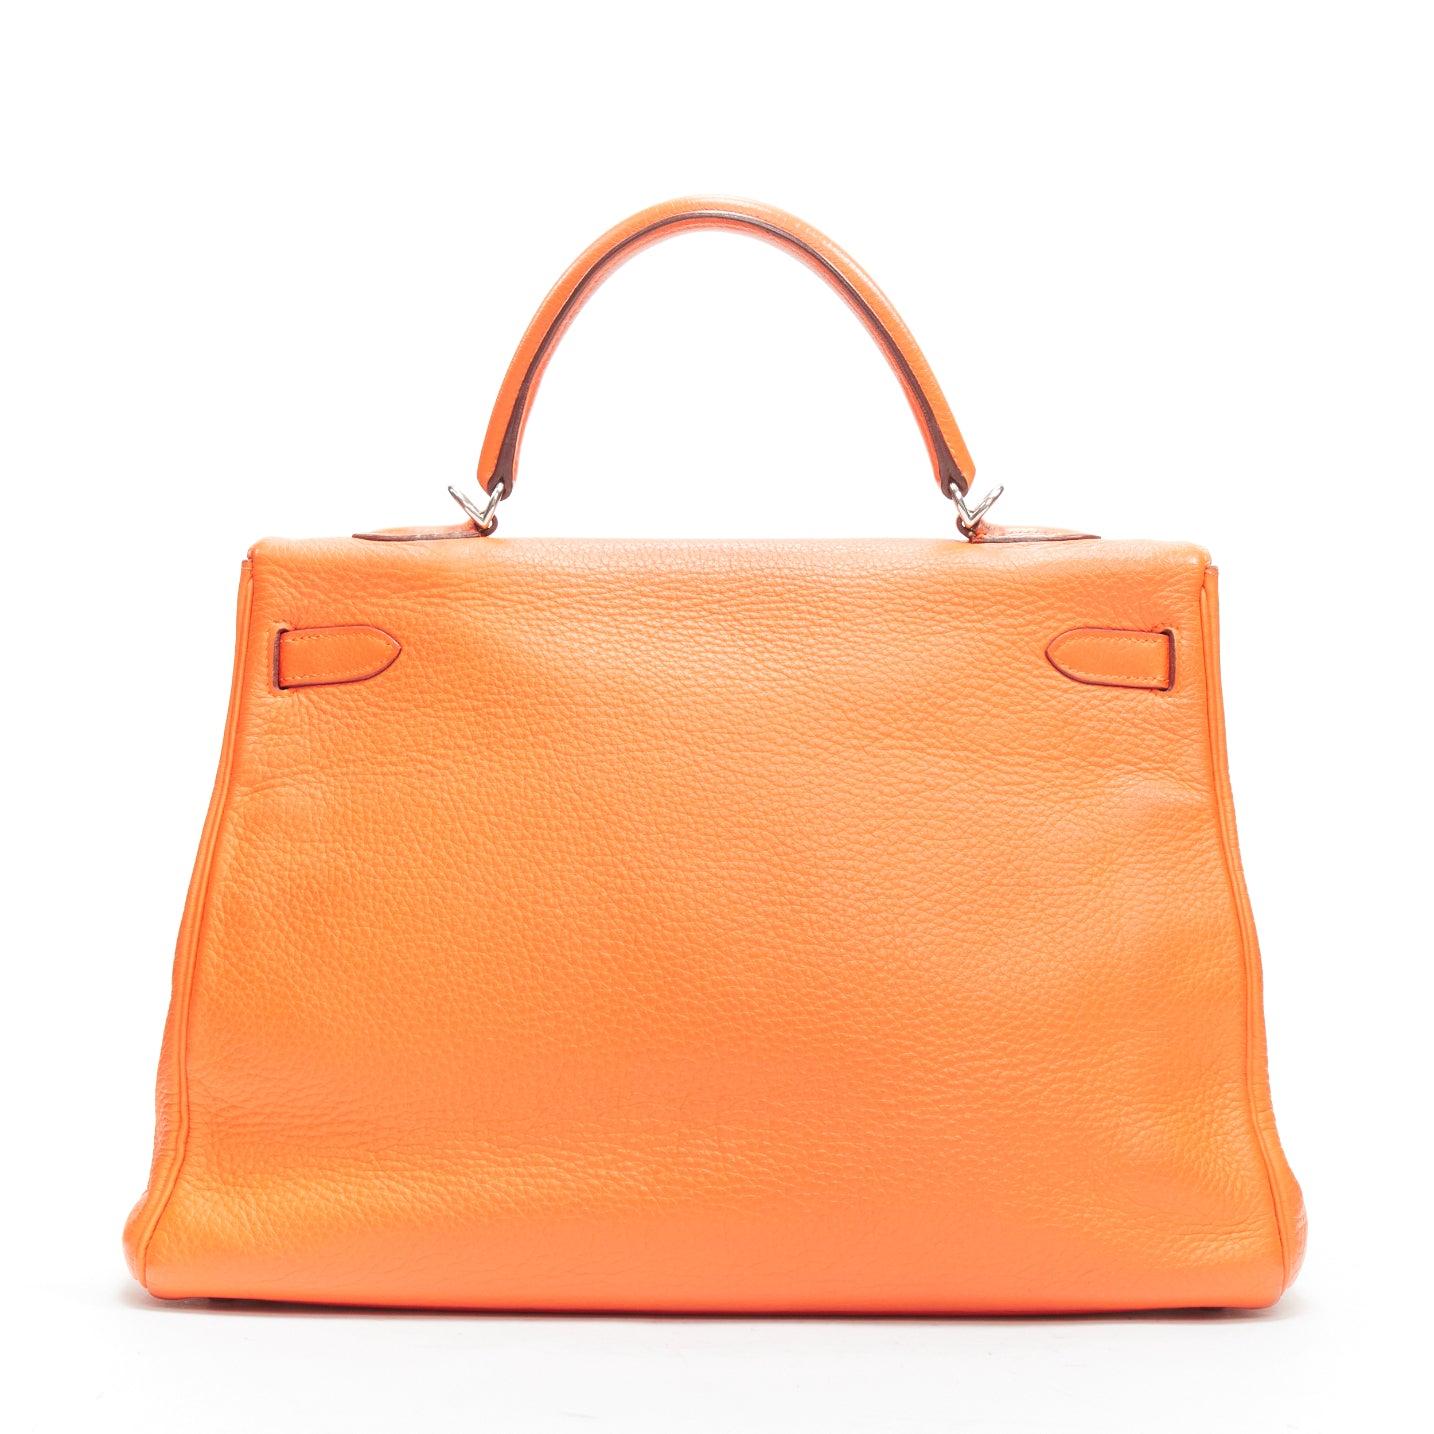 HERMES Kelly 32 PHW orange togo leather silver buckle top handle shoulder bag For Sale 2